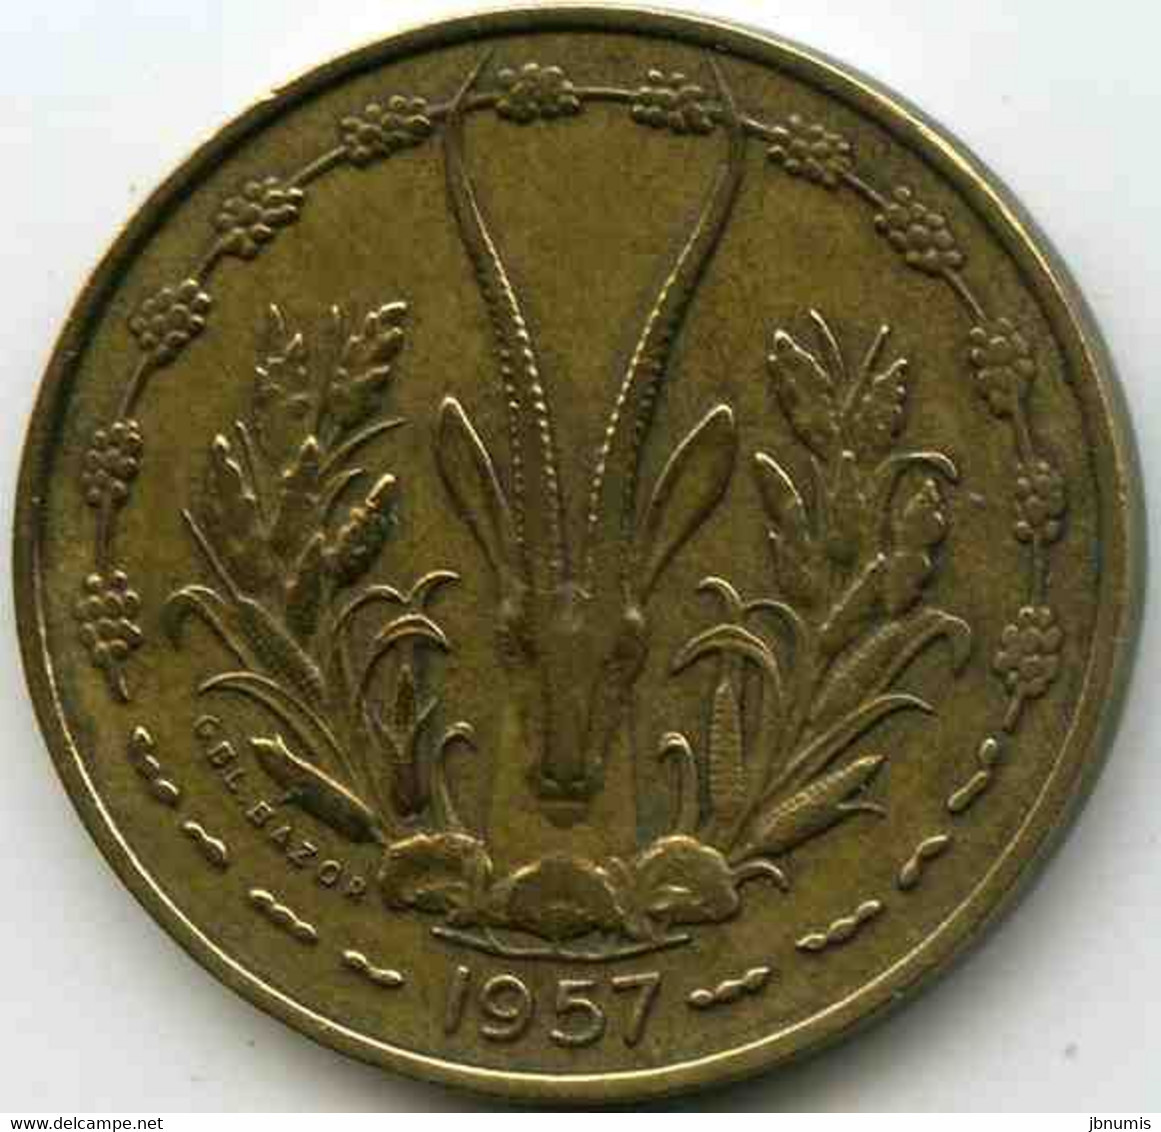 France Afrique Occidentale West Africa Togo 10 Francs 1957 KM 8 - Afrique Occidentale Française